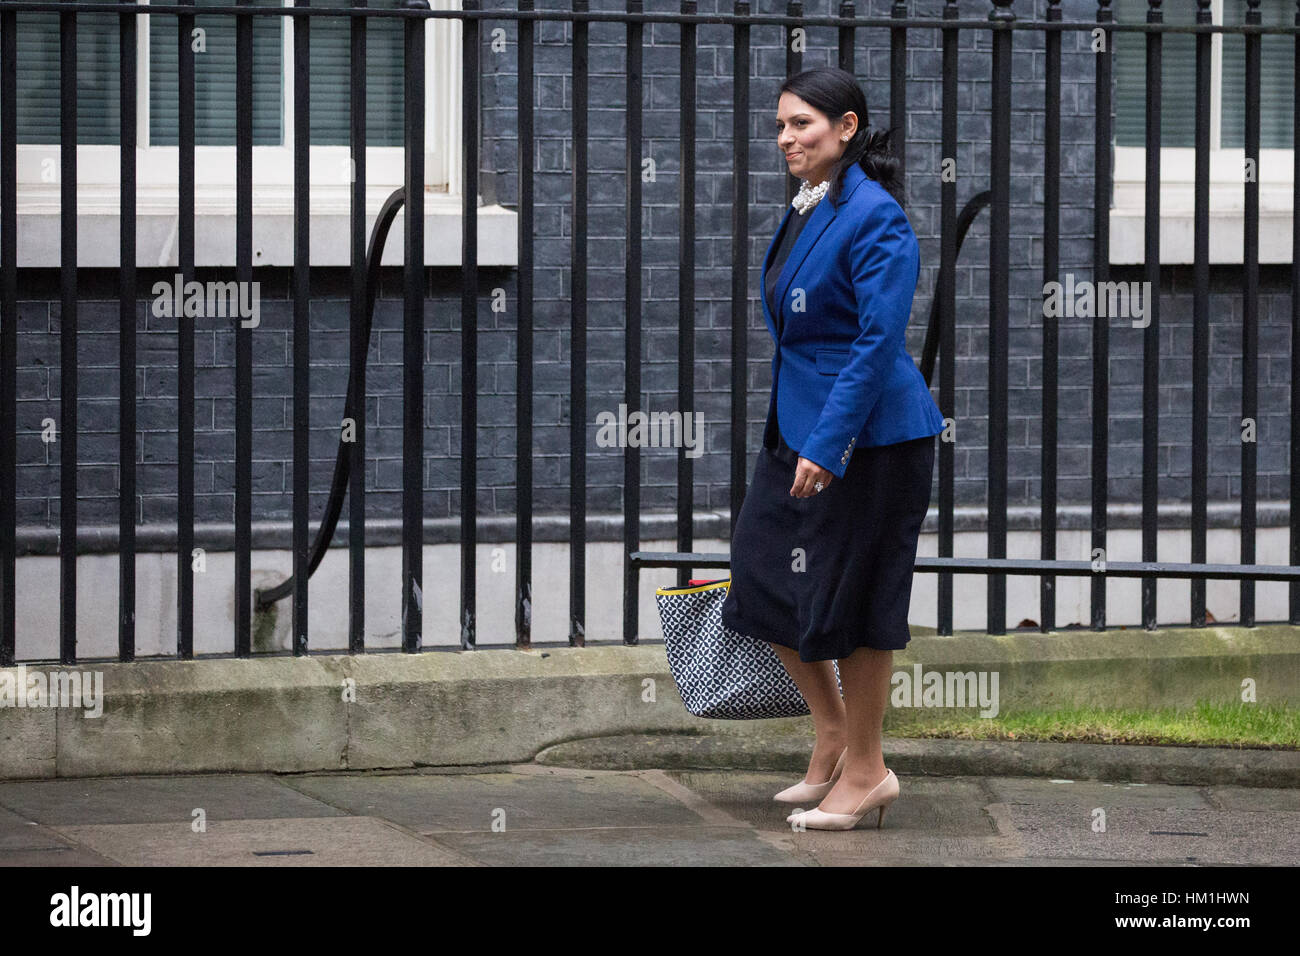 Londres, Reino Unido. 31 ene, 2017. Priti Patel MP, Secretario de Estado para el Desarrollo Internacional, llega al número 10 de Downing Street para una reunión del gabinete. Crédito: Mark Kerrison/Alamy Live News Foto de stock